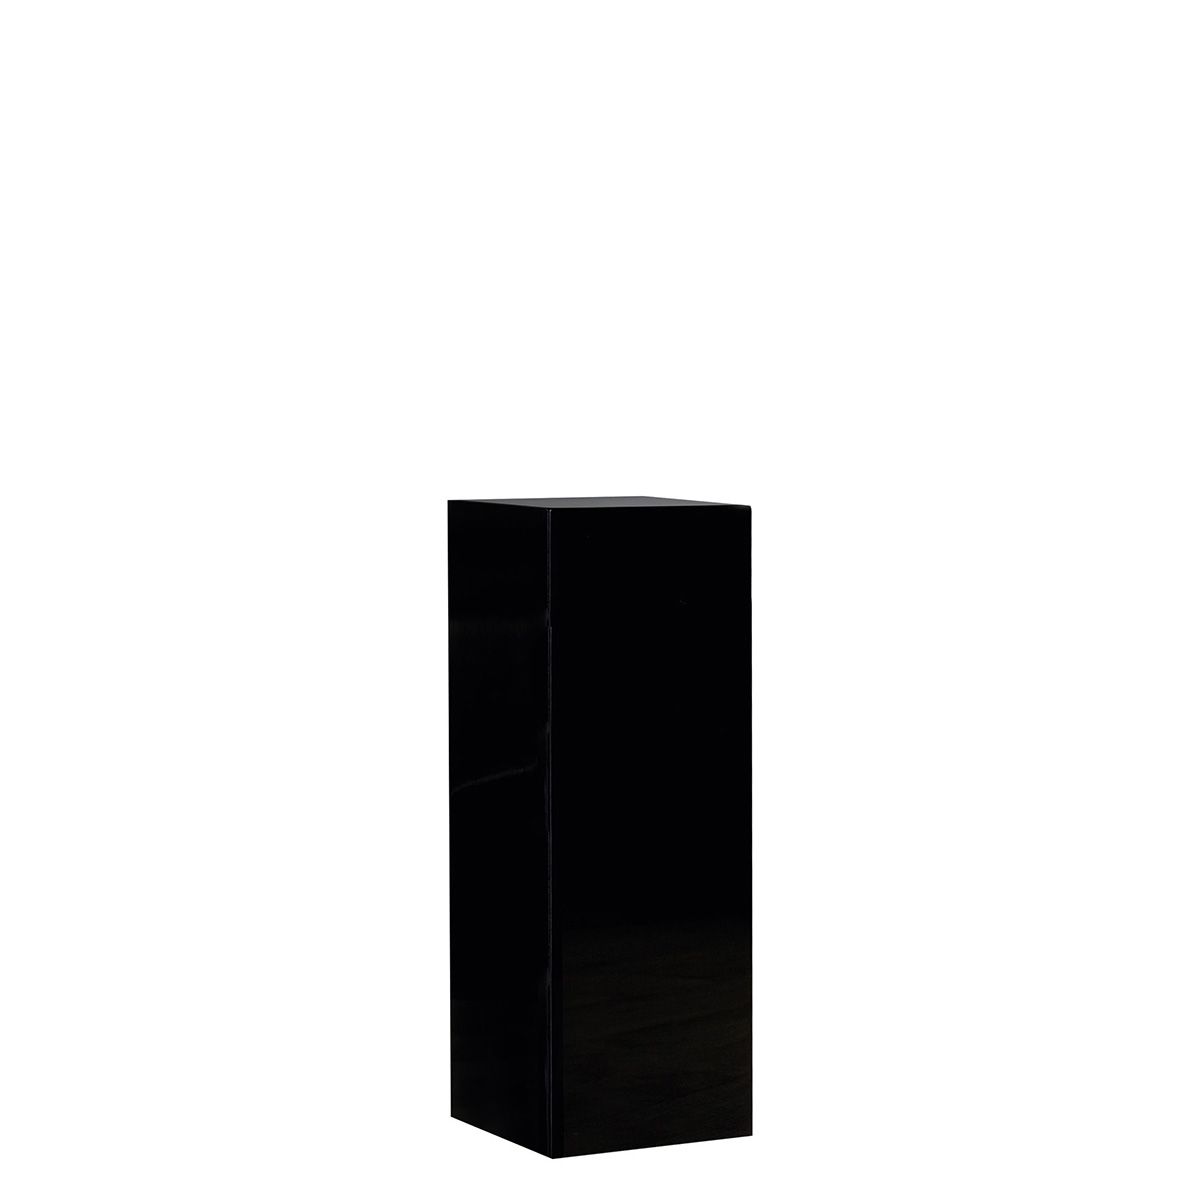 Colonne de présentation ou socle, en résine noire, pour poser une statue. Hauteur 70 cm